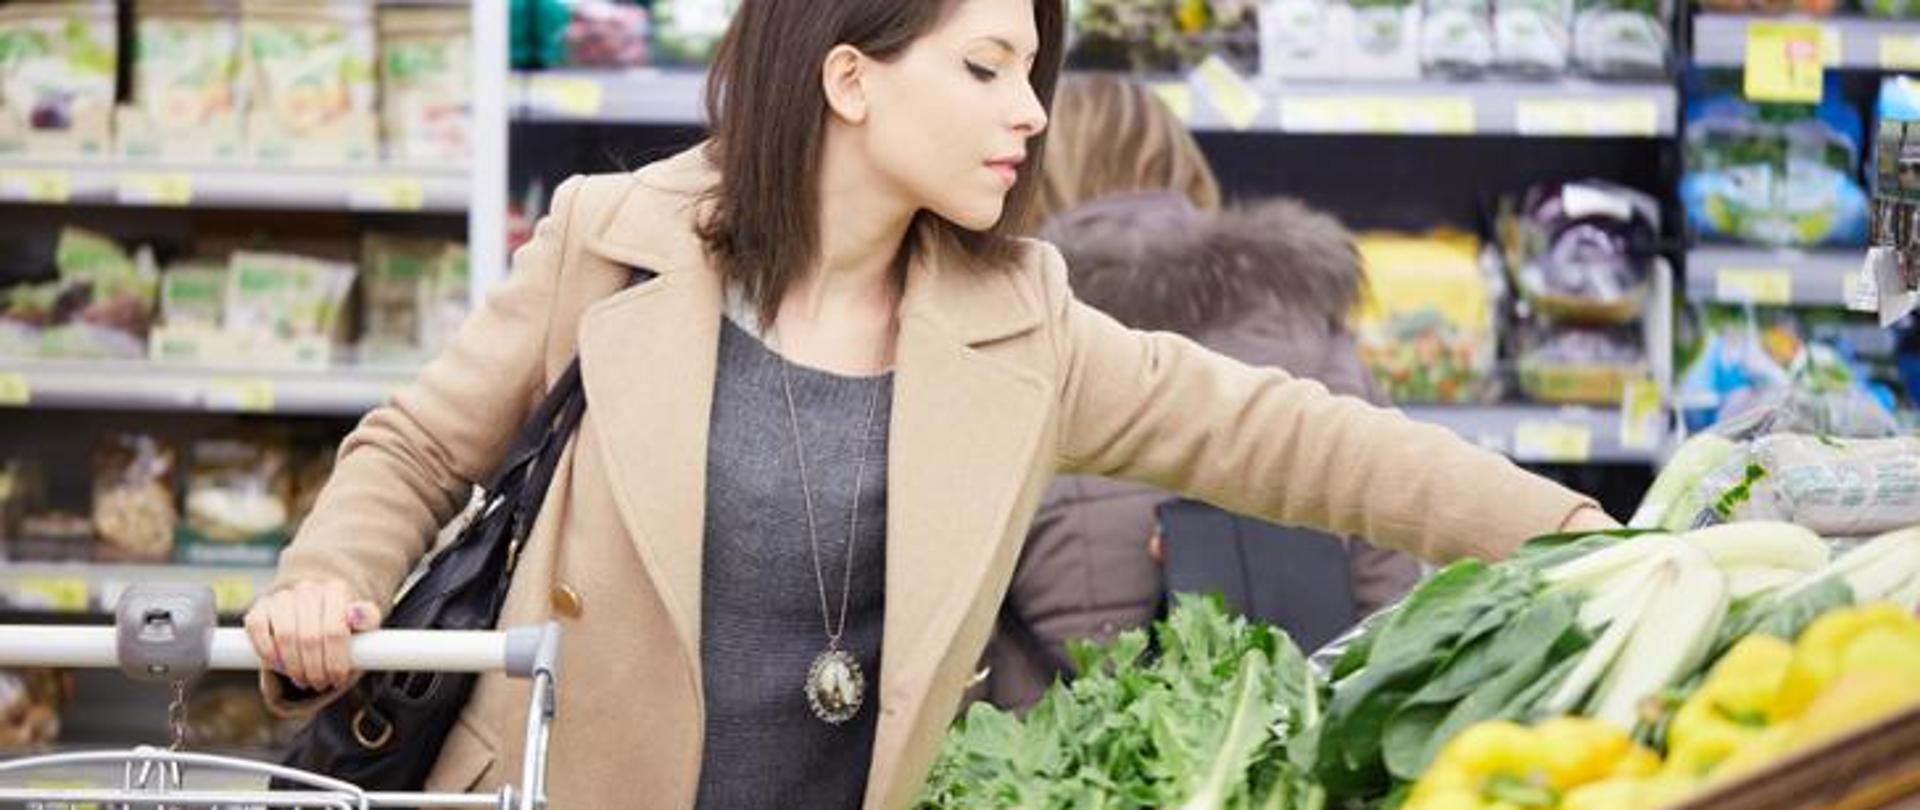 kobieta wybierająca warzywa w sklepie